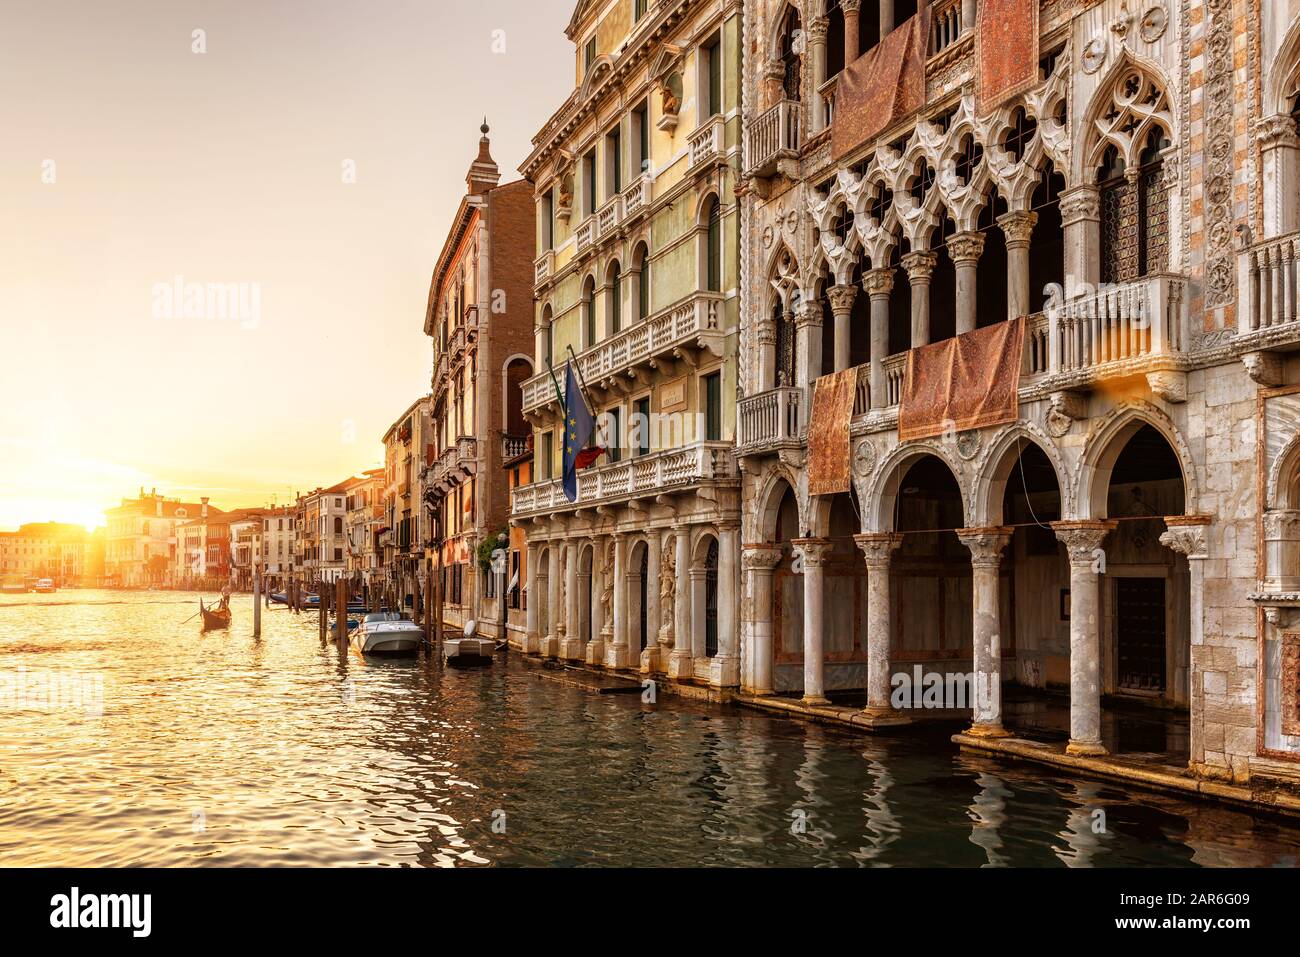 Venedig bei Sonnenuntergang, Italien. CA' d'Oro Palast (Golden House) im Vordergrund. Es ist das Wahrzeichen Venedigs. Schöner Blick auf den Canal Grande im Zentrum von Venedig a Stockfoto